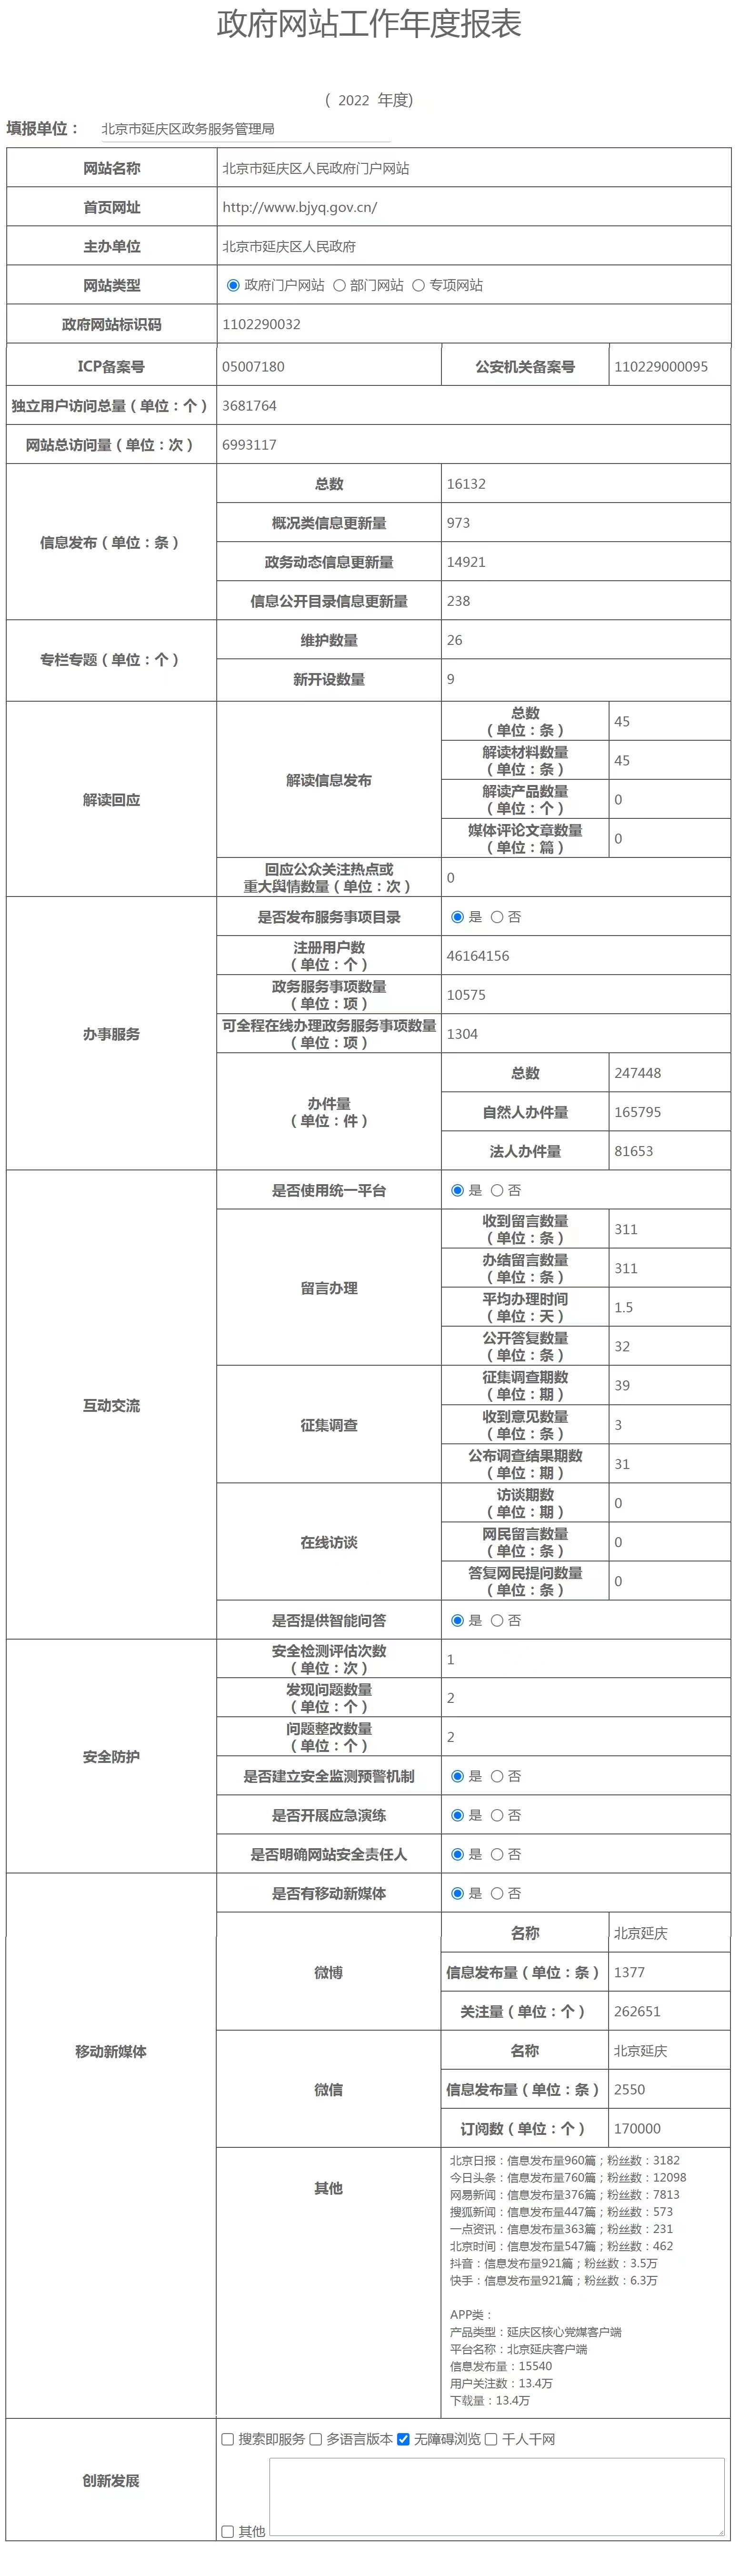 北京市延庆区人民政府2022年政府网站年度工作报表